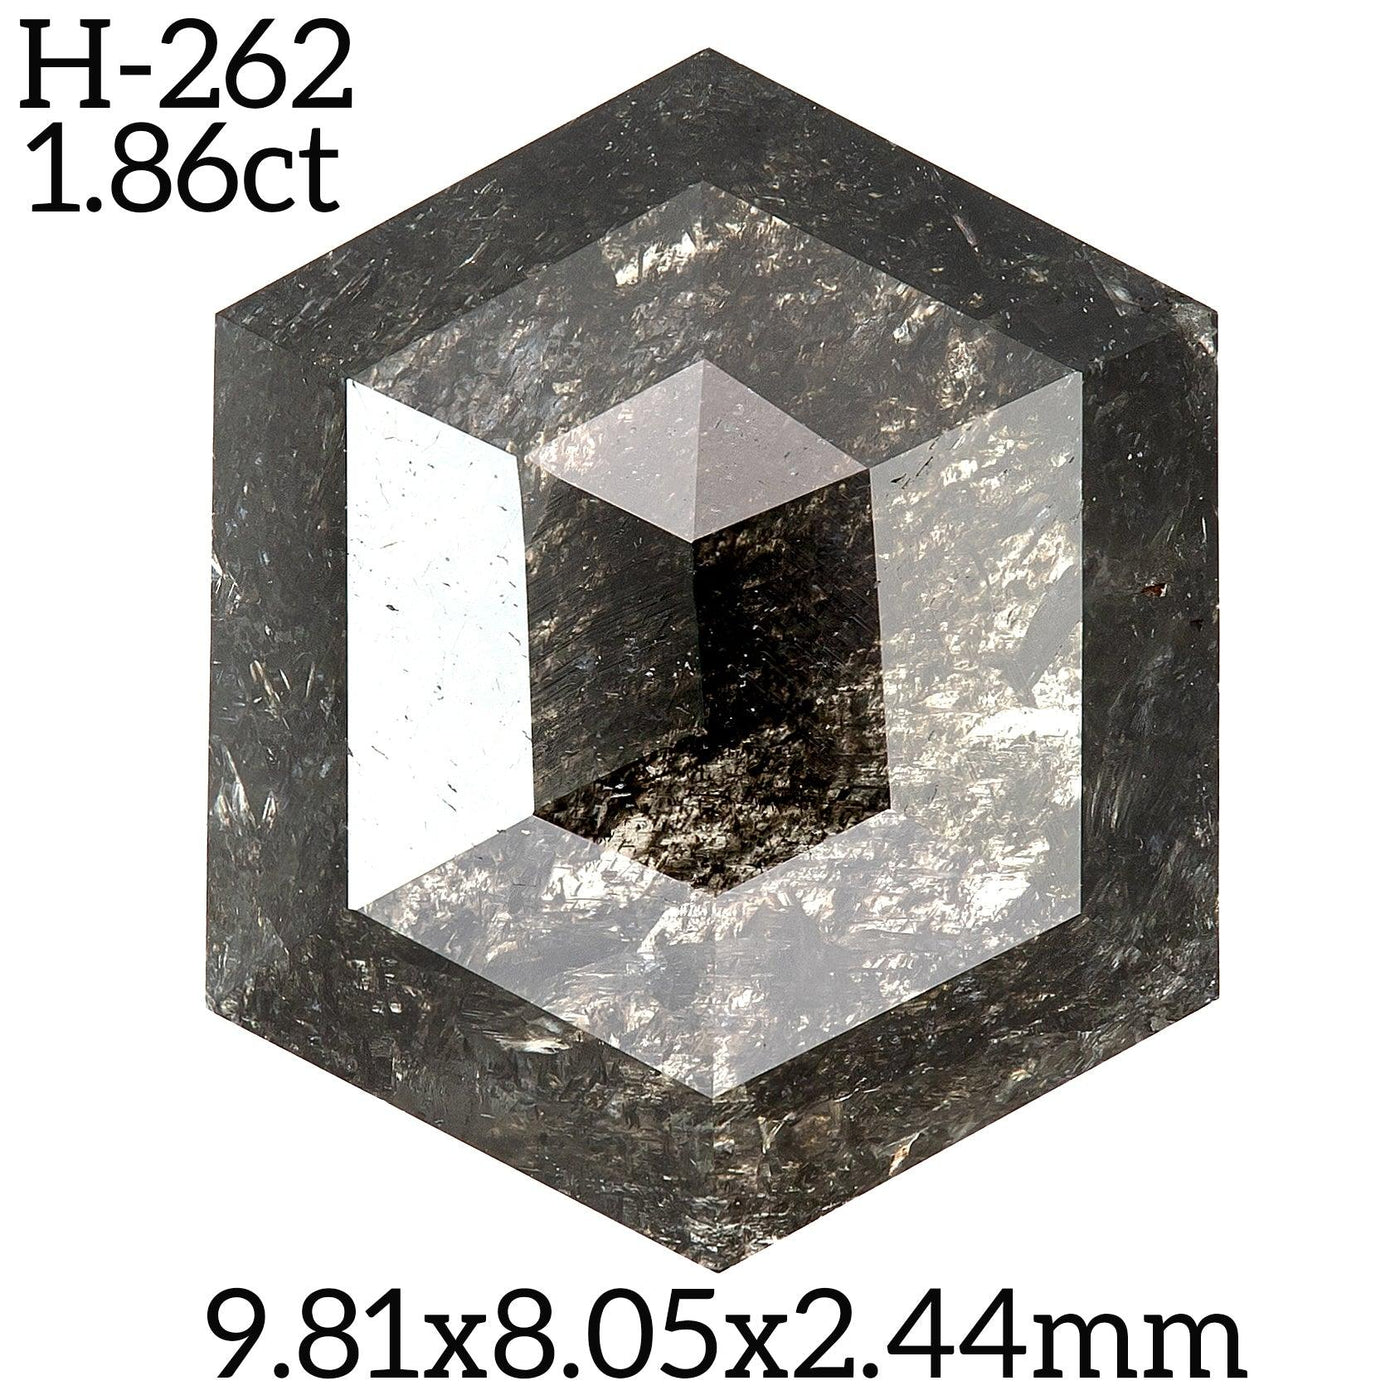 H262 - Salt and pepper hexagon diamond